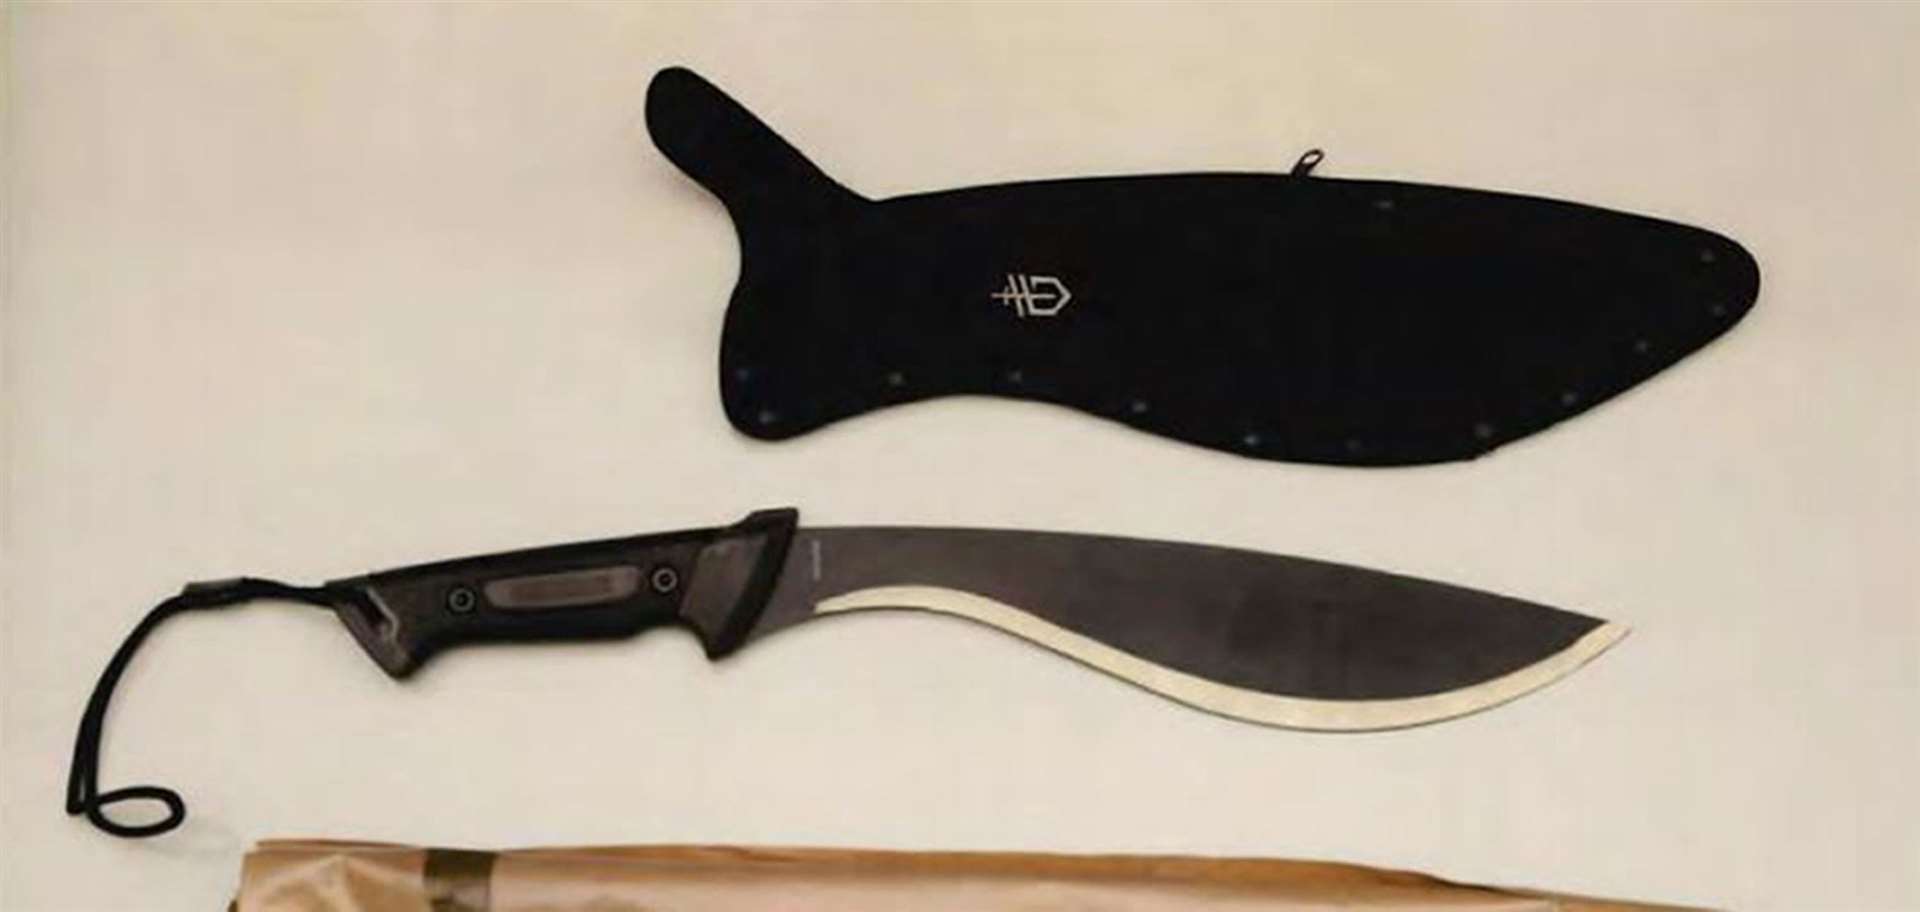 A knife belonging to Gabrielle Friel (Crown Office/PA)